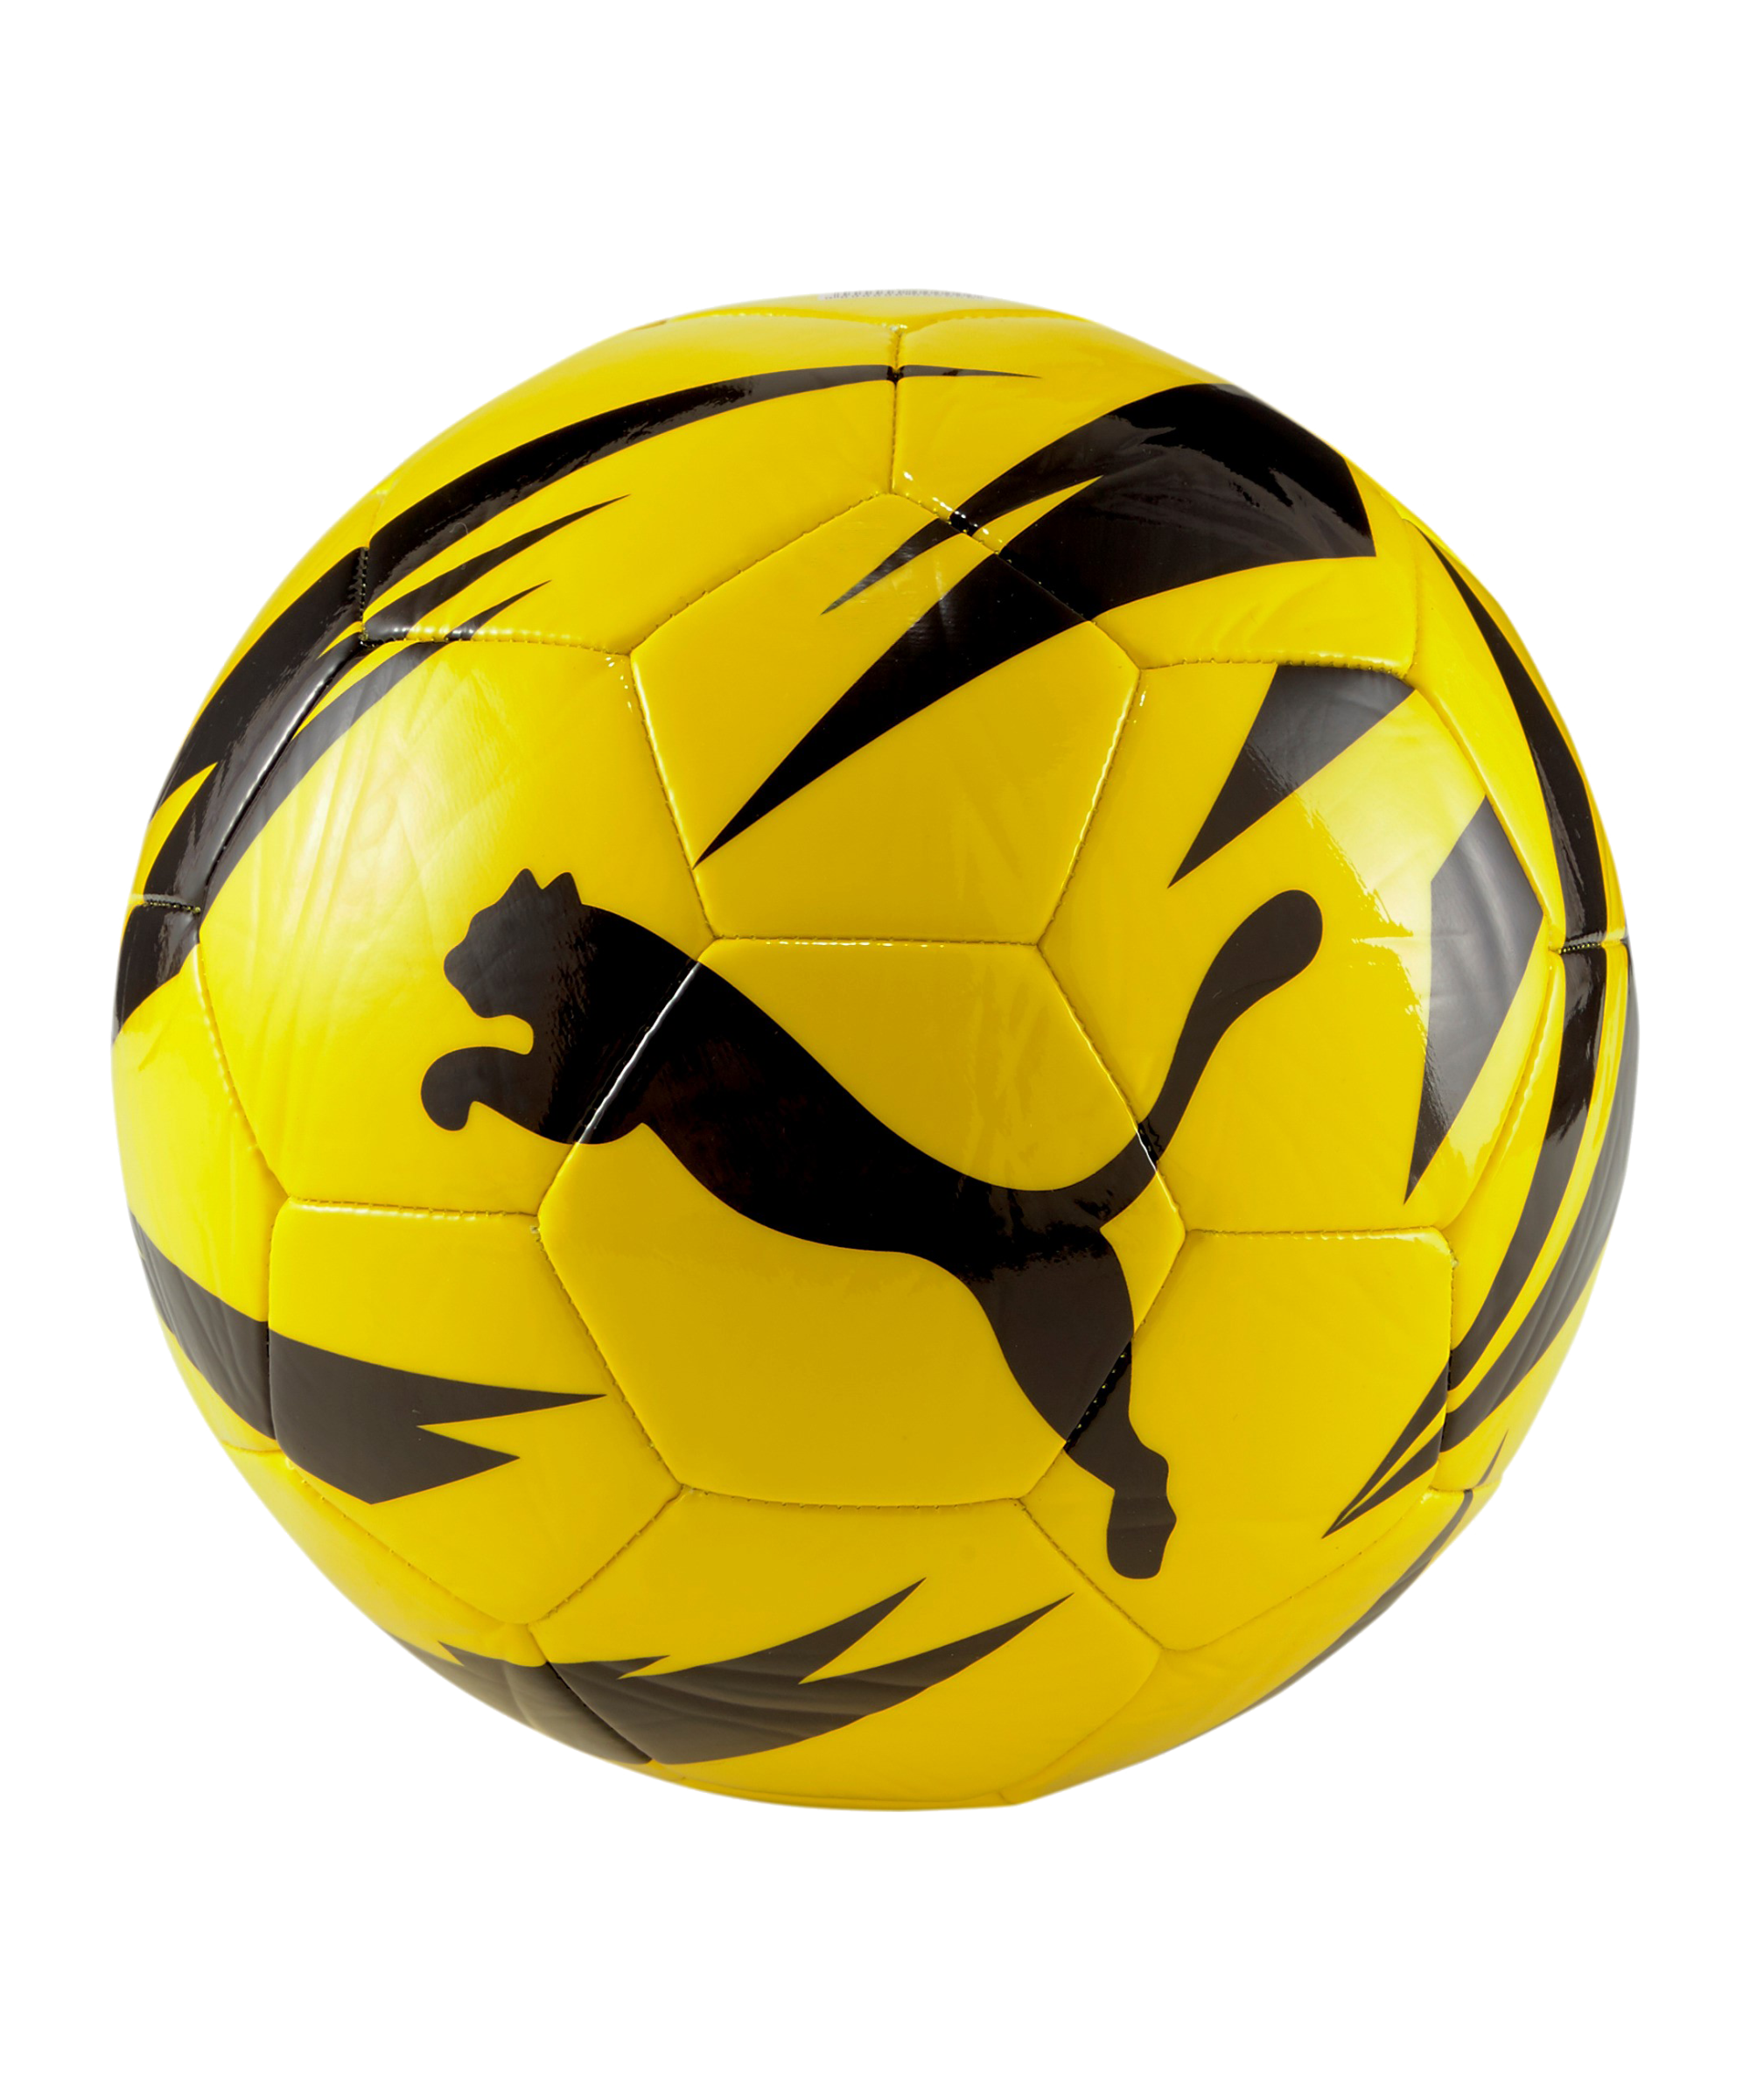 Fans ball. Футбольный мяч Puma BVB. Puma Borussia мяч. BVB Fan Ball Puma. Мяч футбольный Puma 083631 Yellow+Black+Silver.